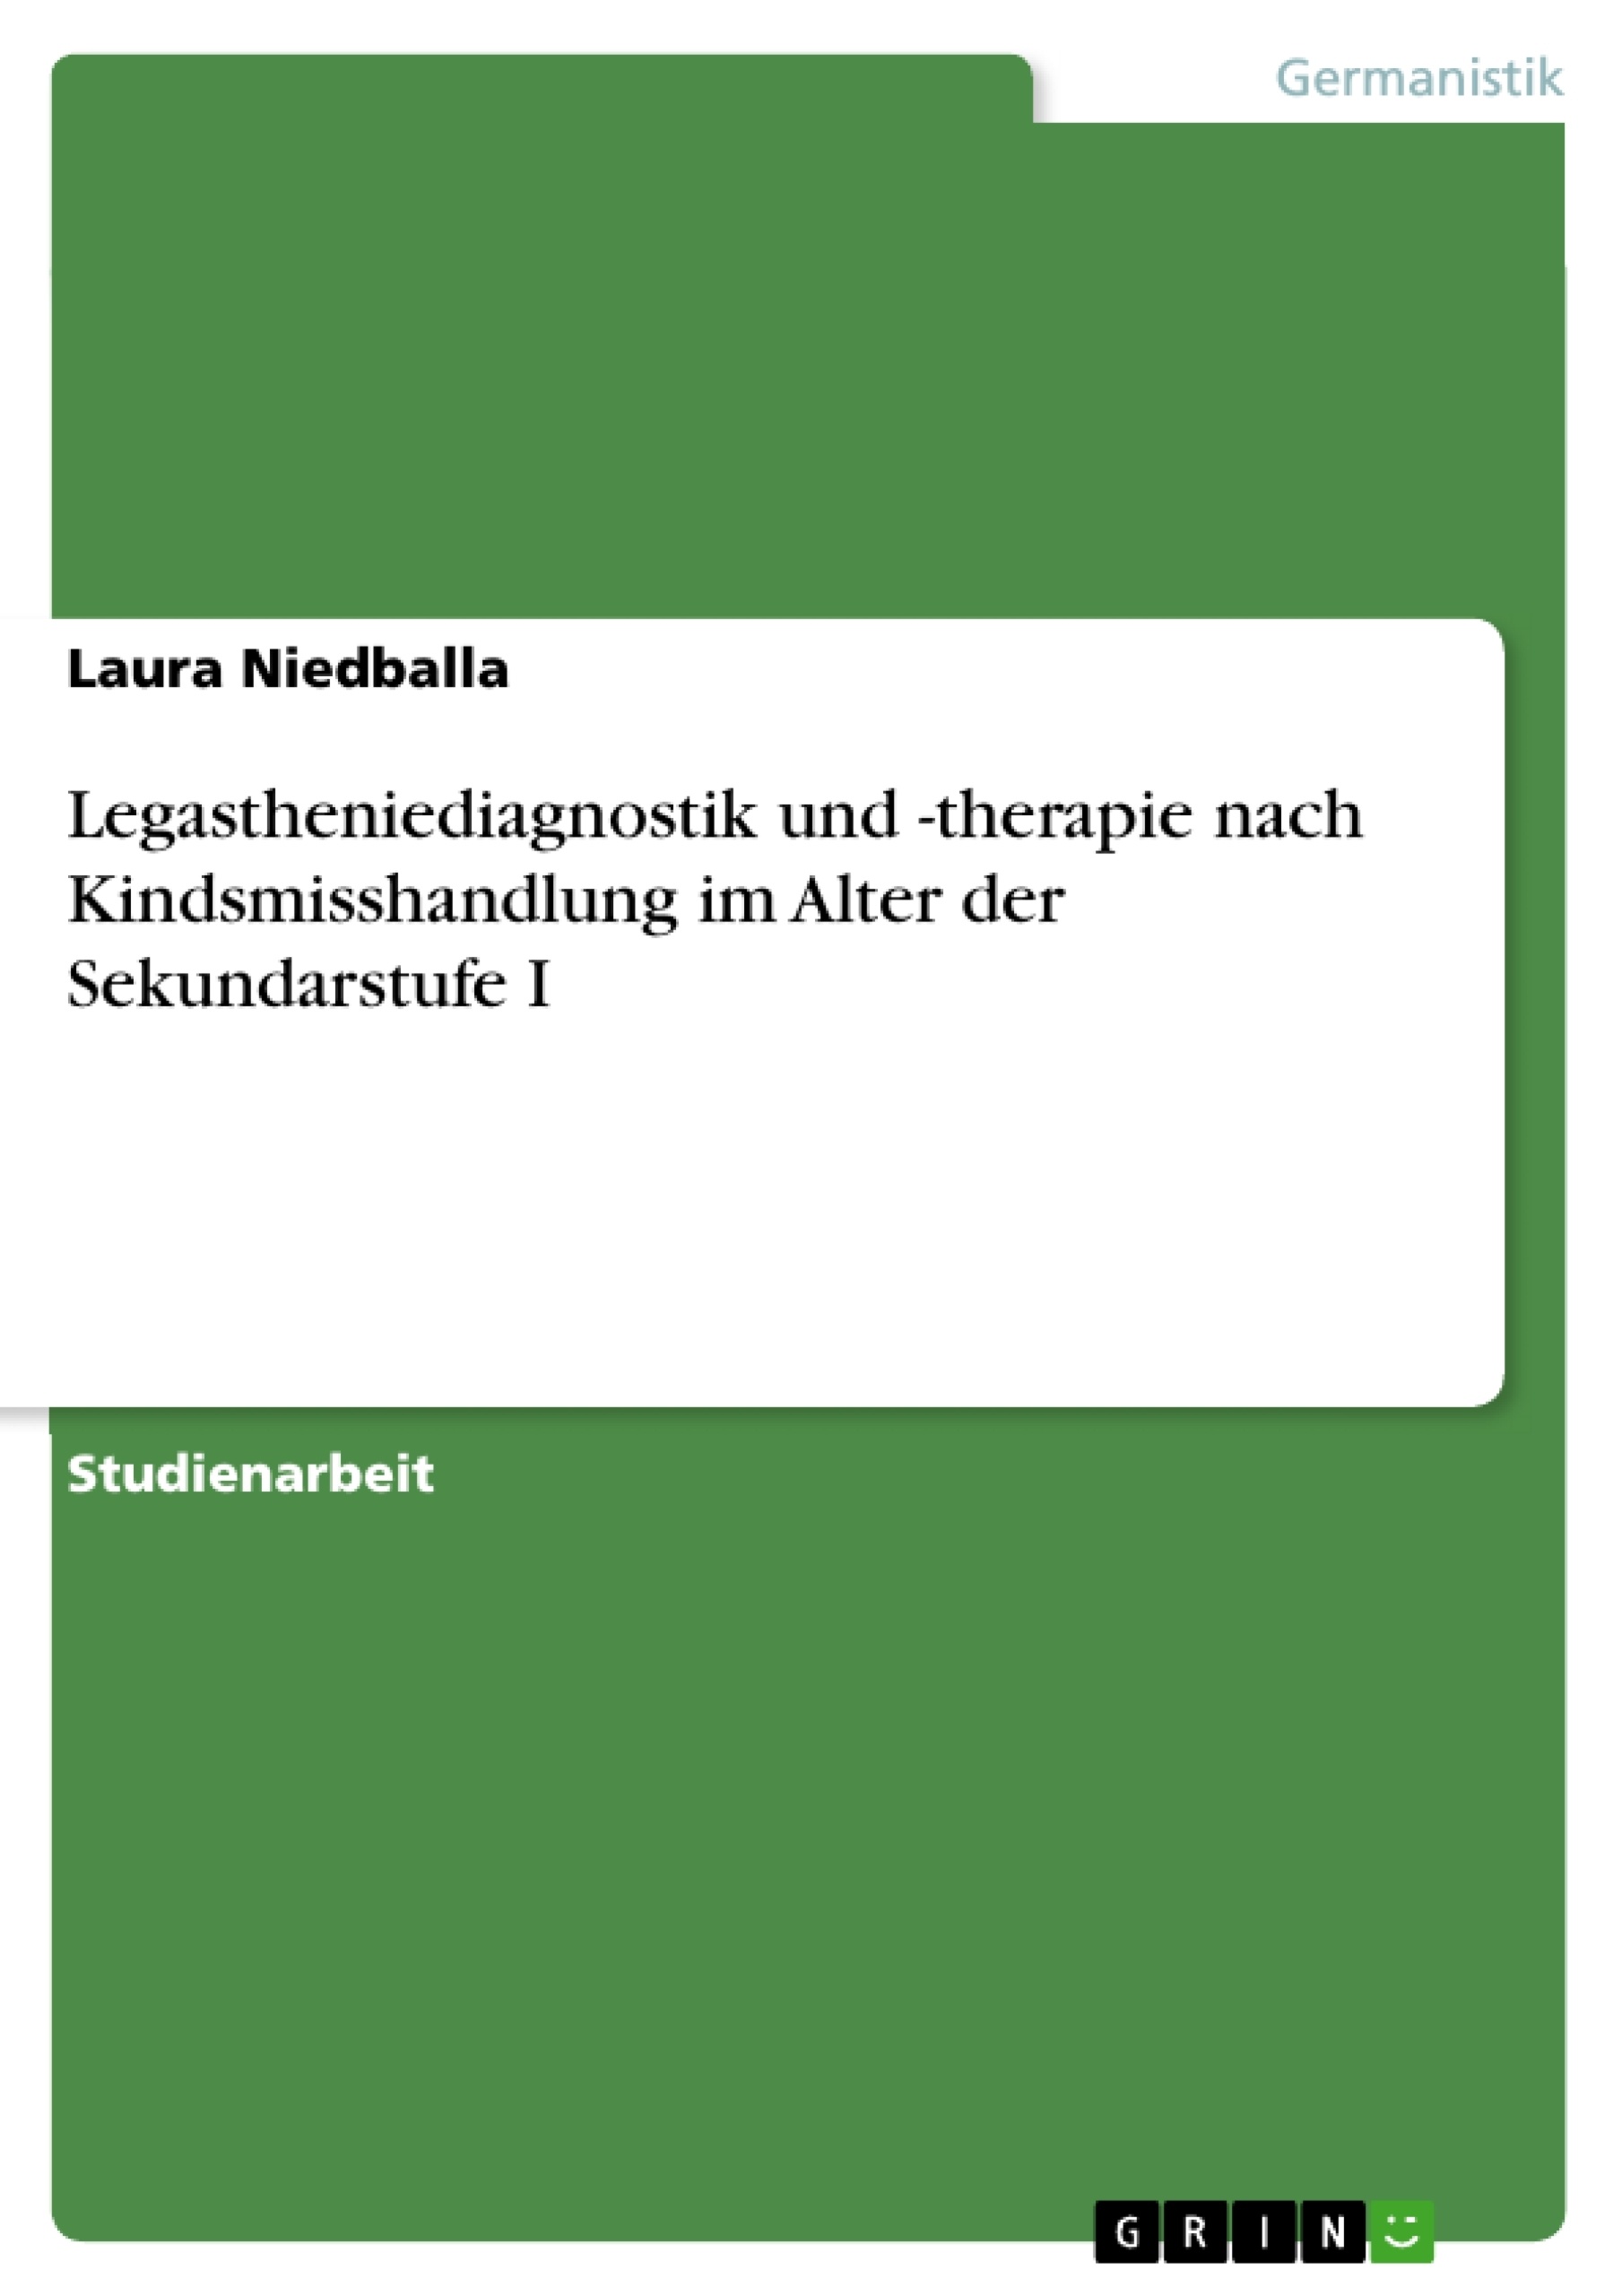 Title: Legastheniediagnostik und -therapie nach Kindsmisshandlung im Alter der Sekundarstufe I